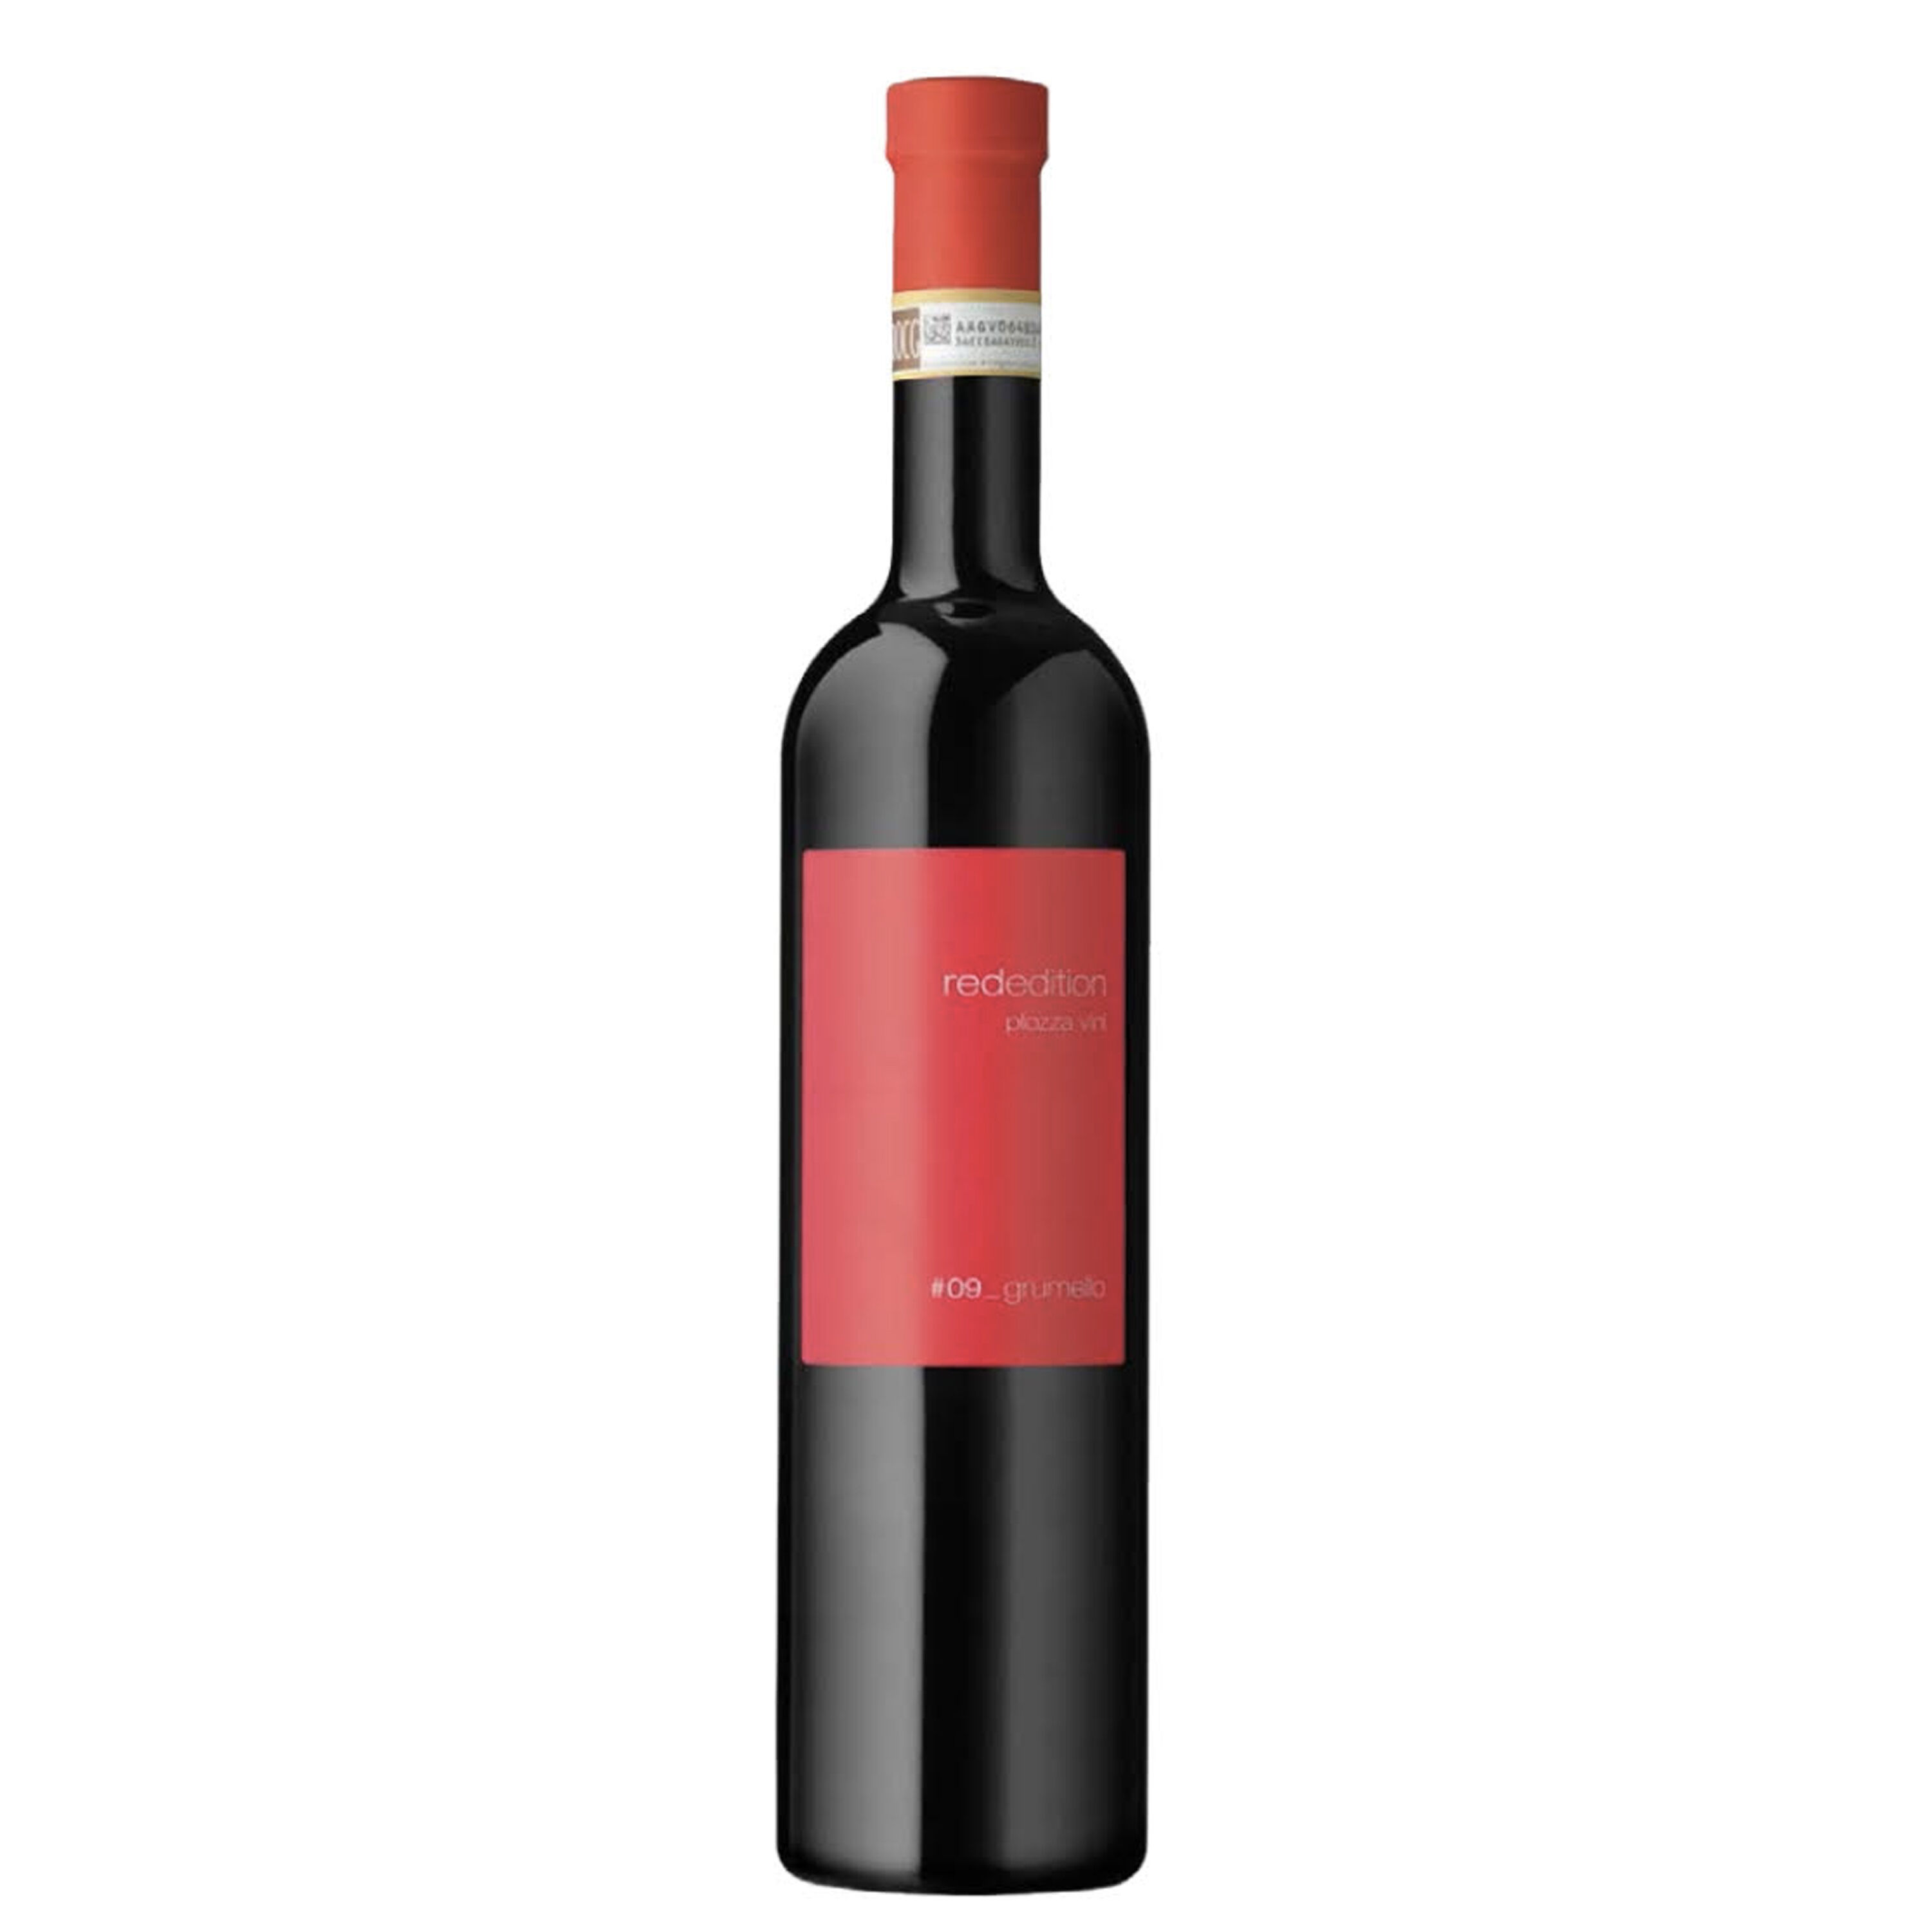 Plozza - Valtellina Superiore Grumello Riserva Docg Red Edition 2015